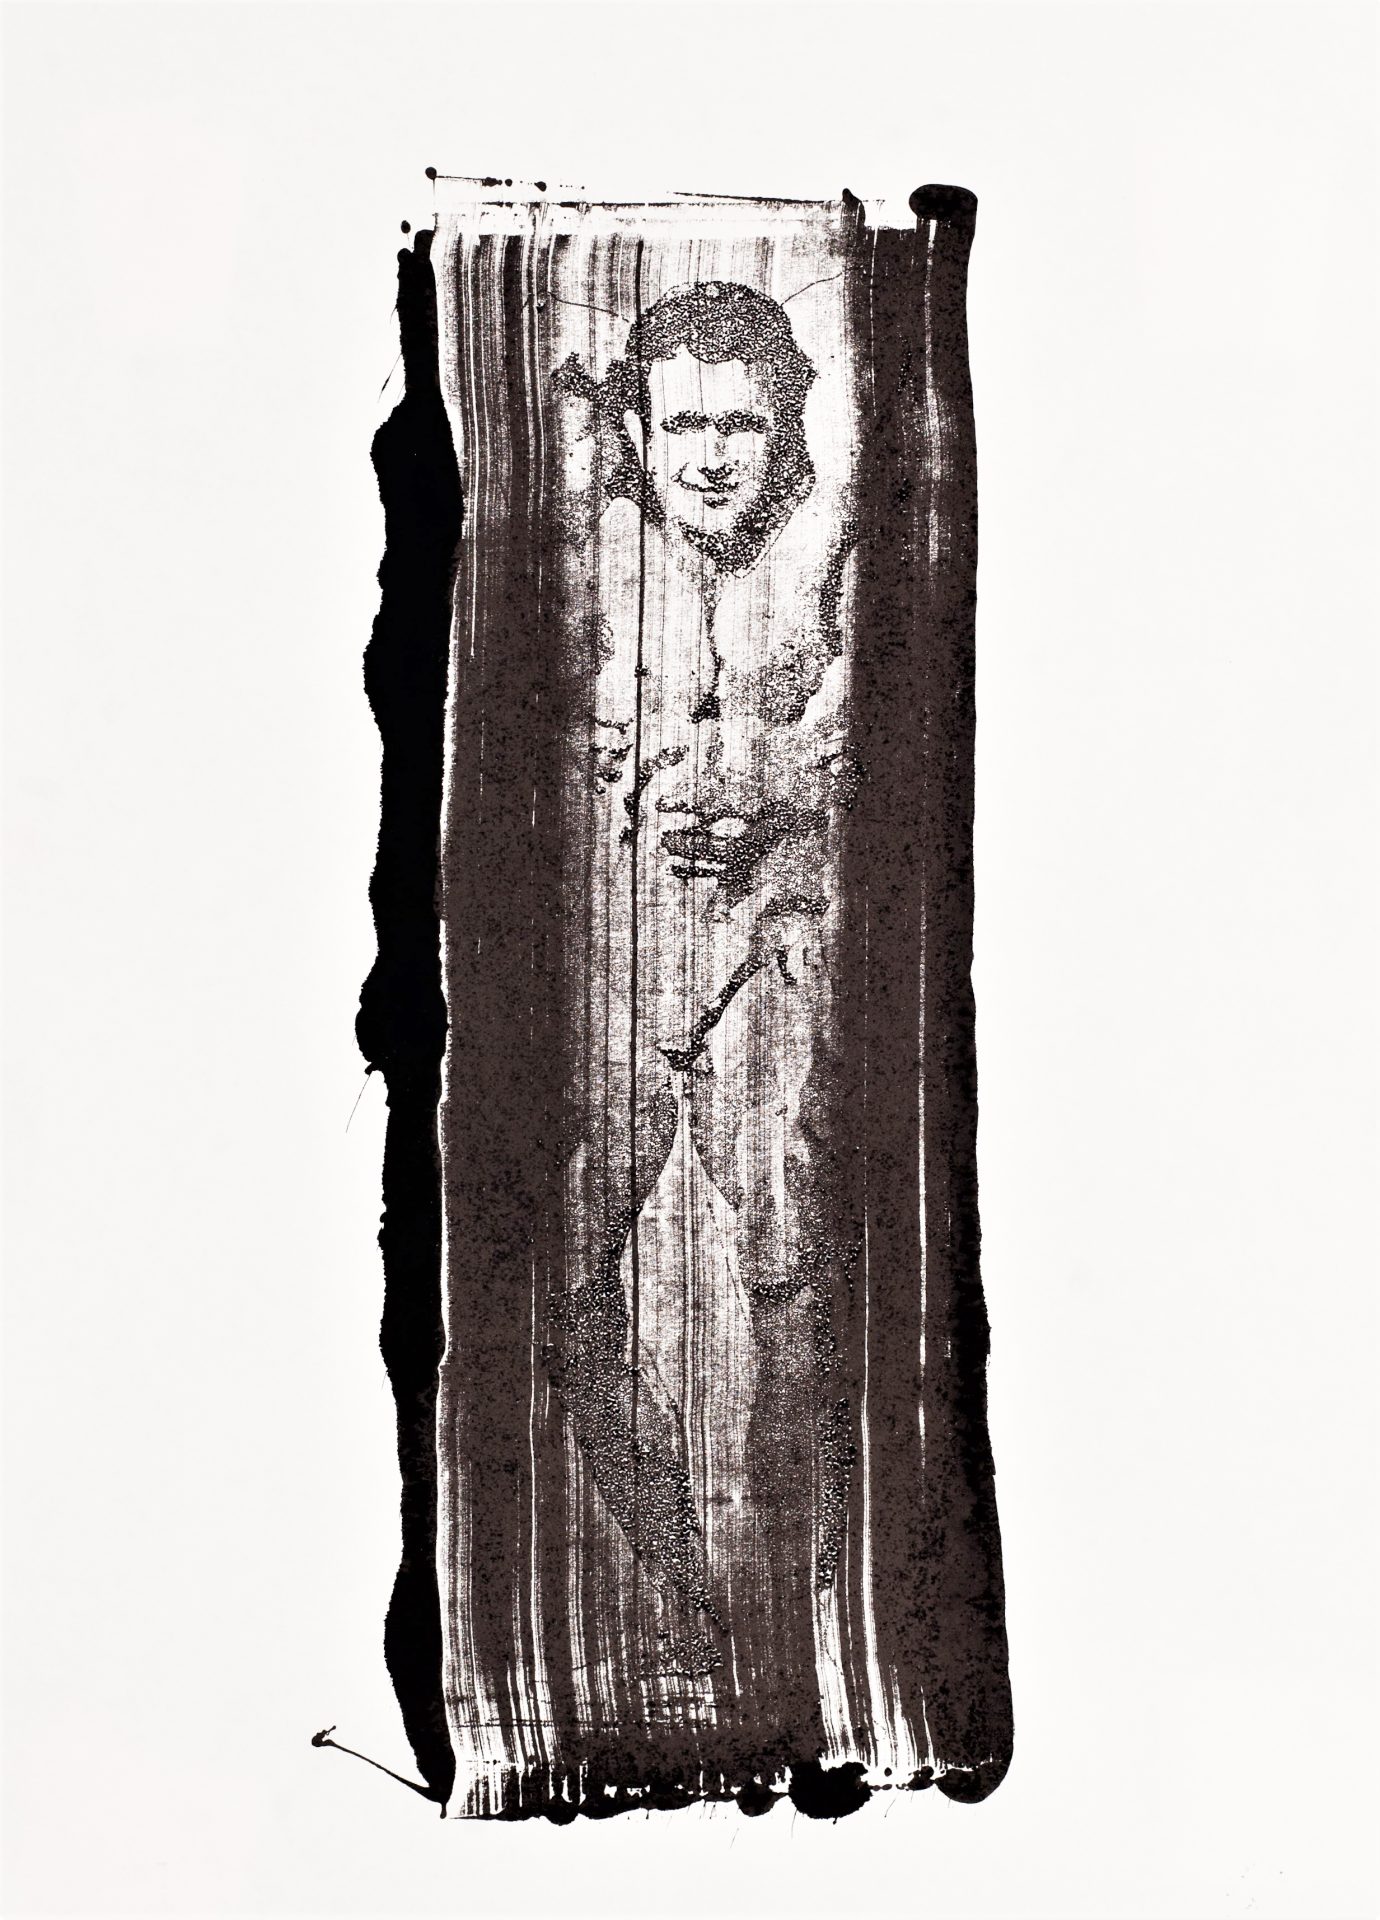 Aeternus
monotype
20x30cm